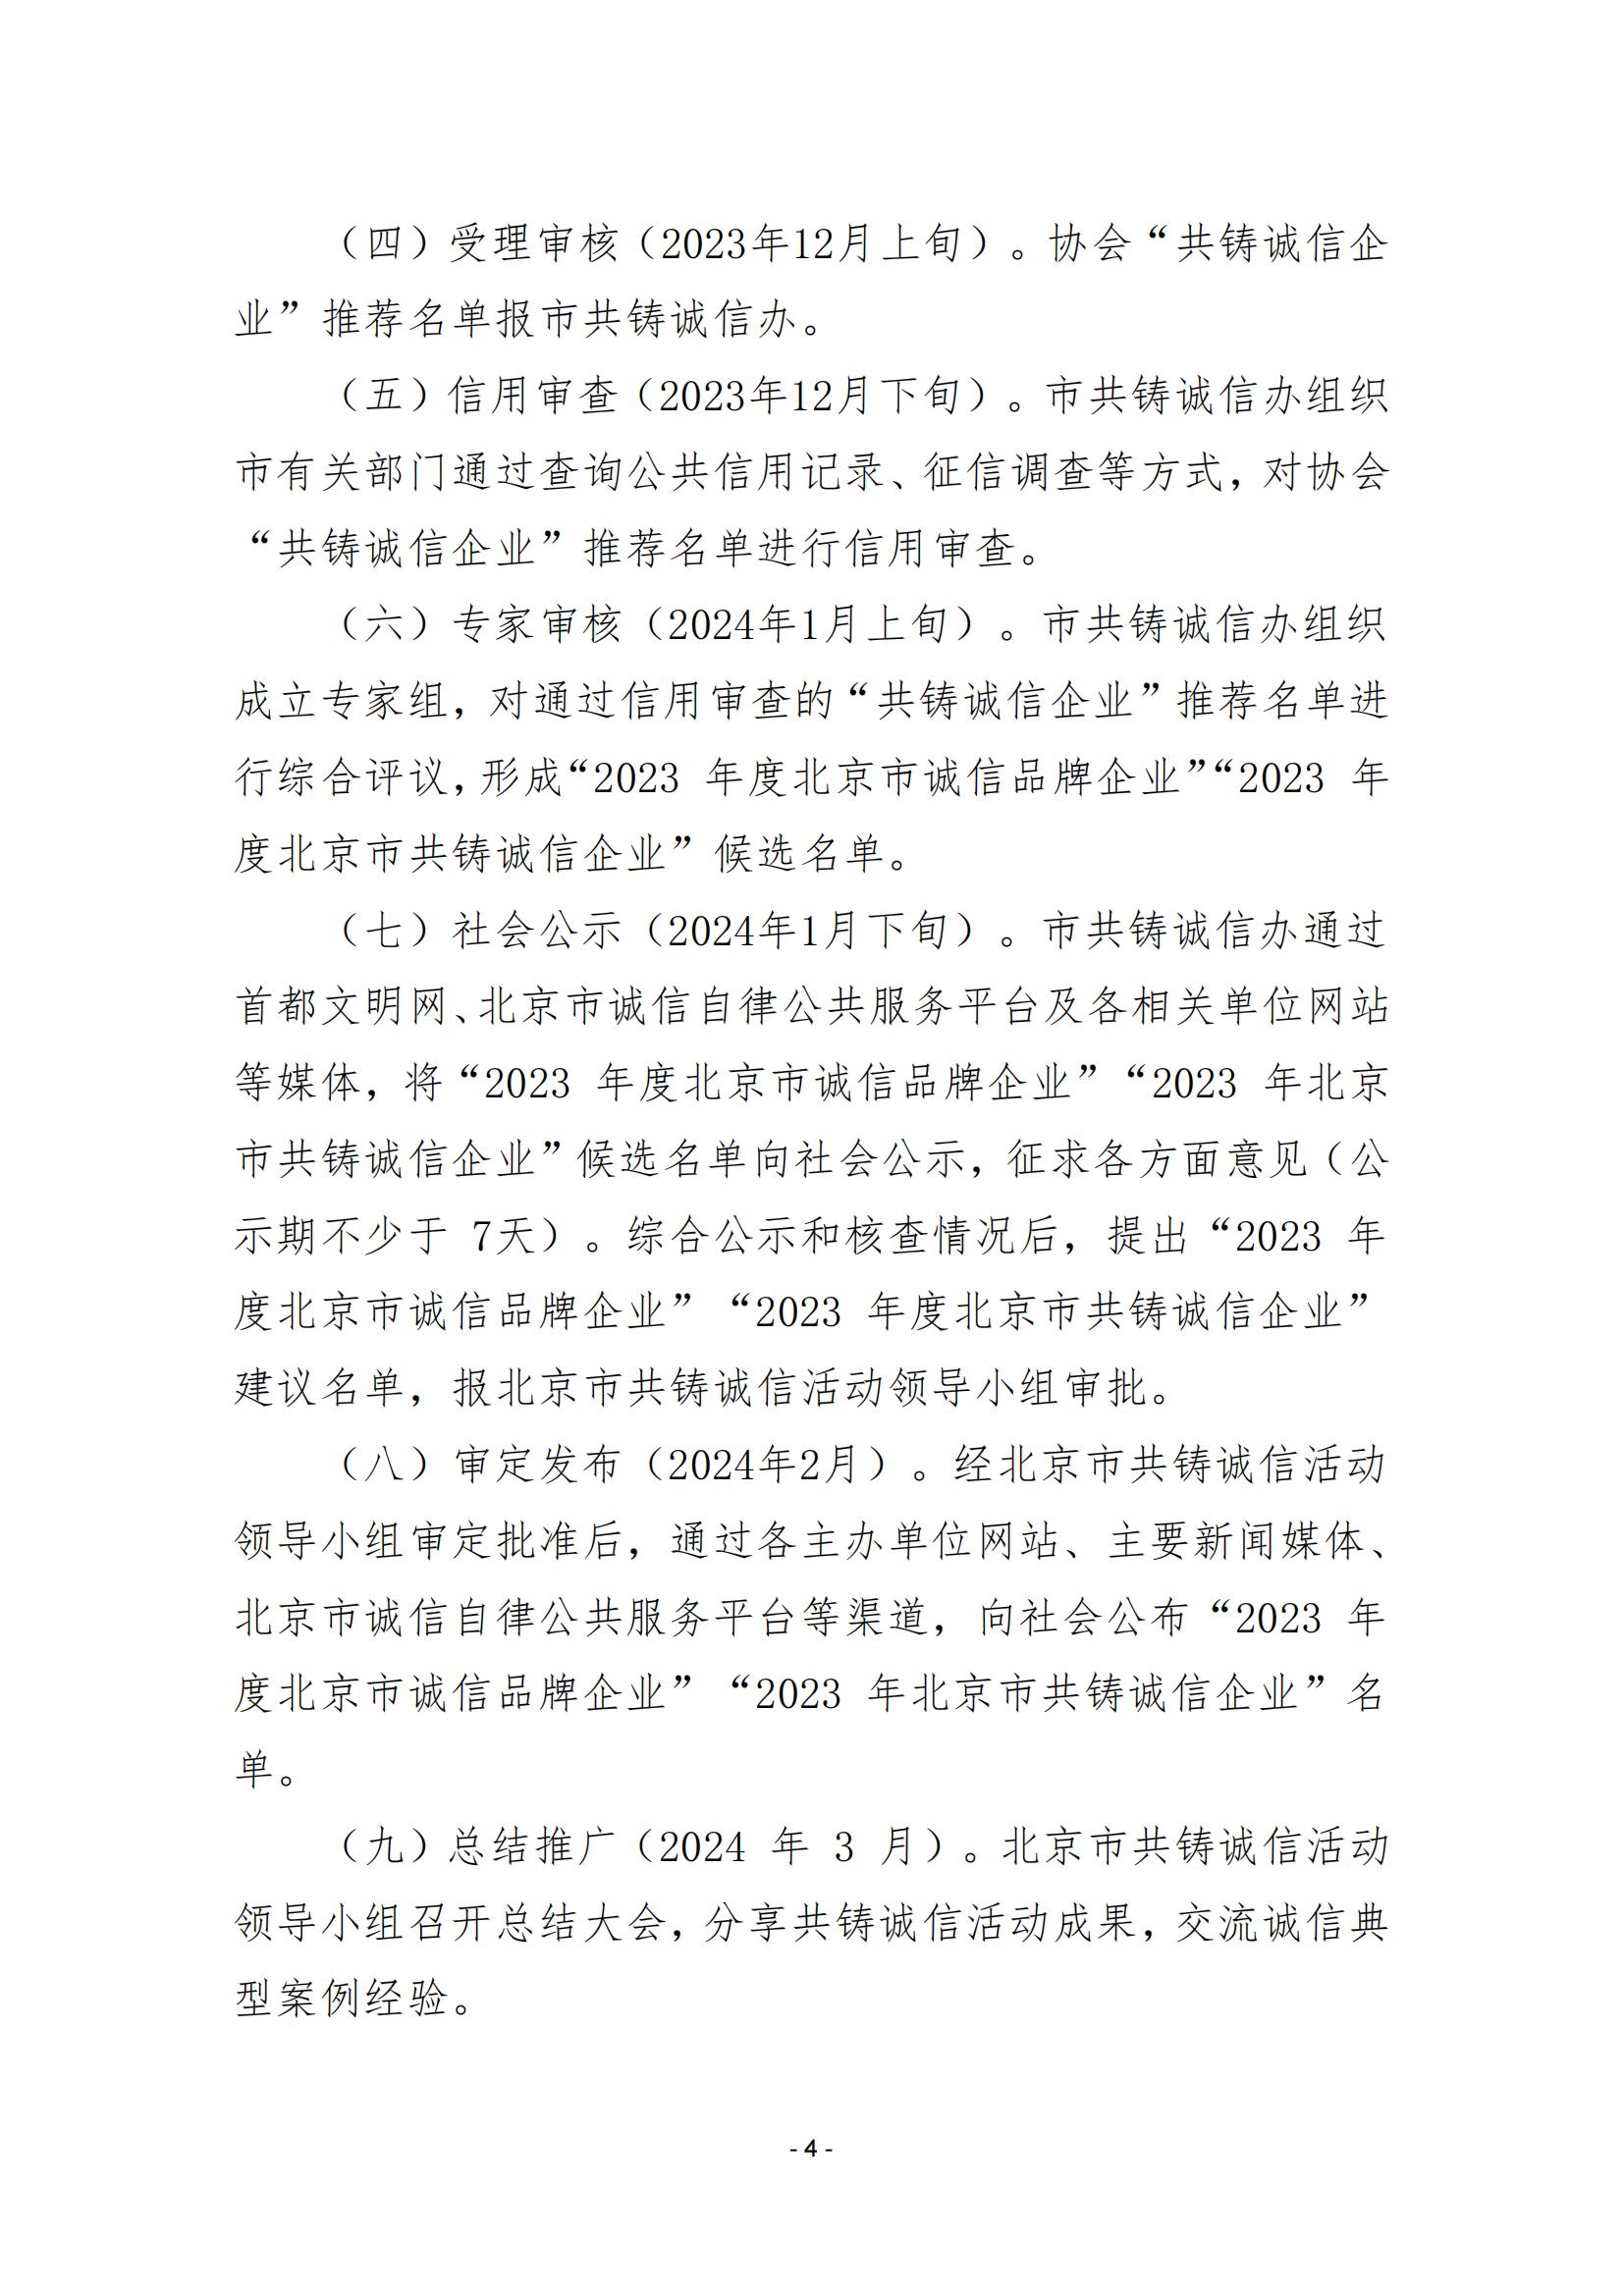 2023 年度“北京市共铸诚信企业”征集工作的通知（202324）_03.jpg